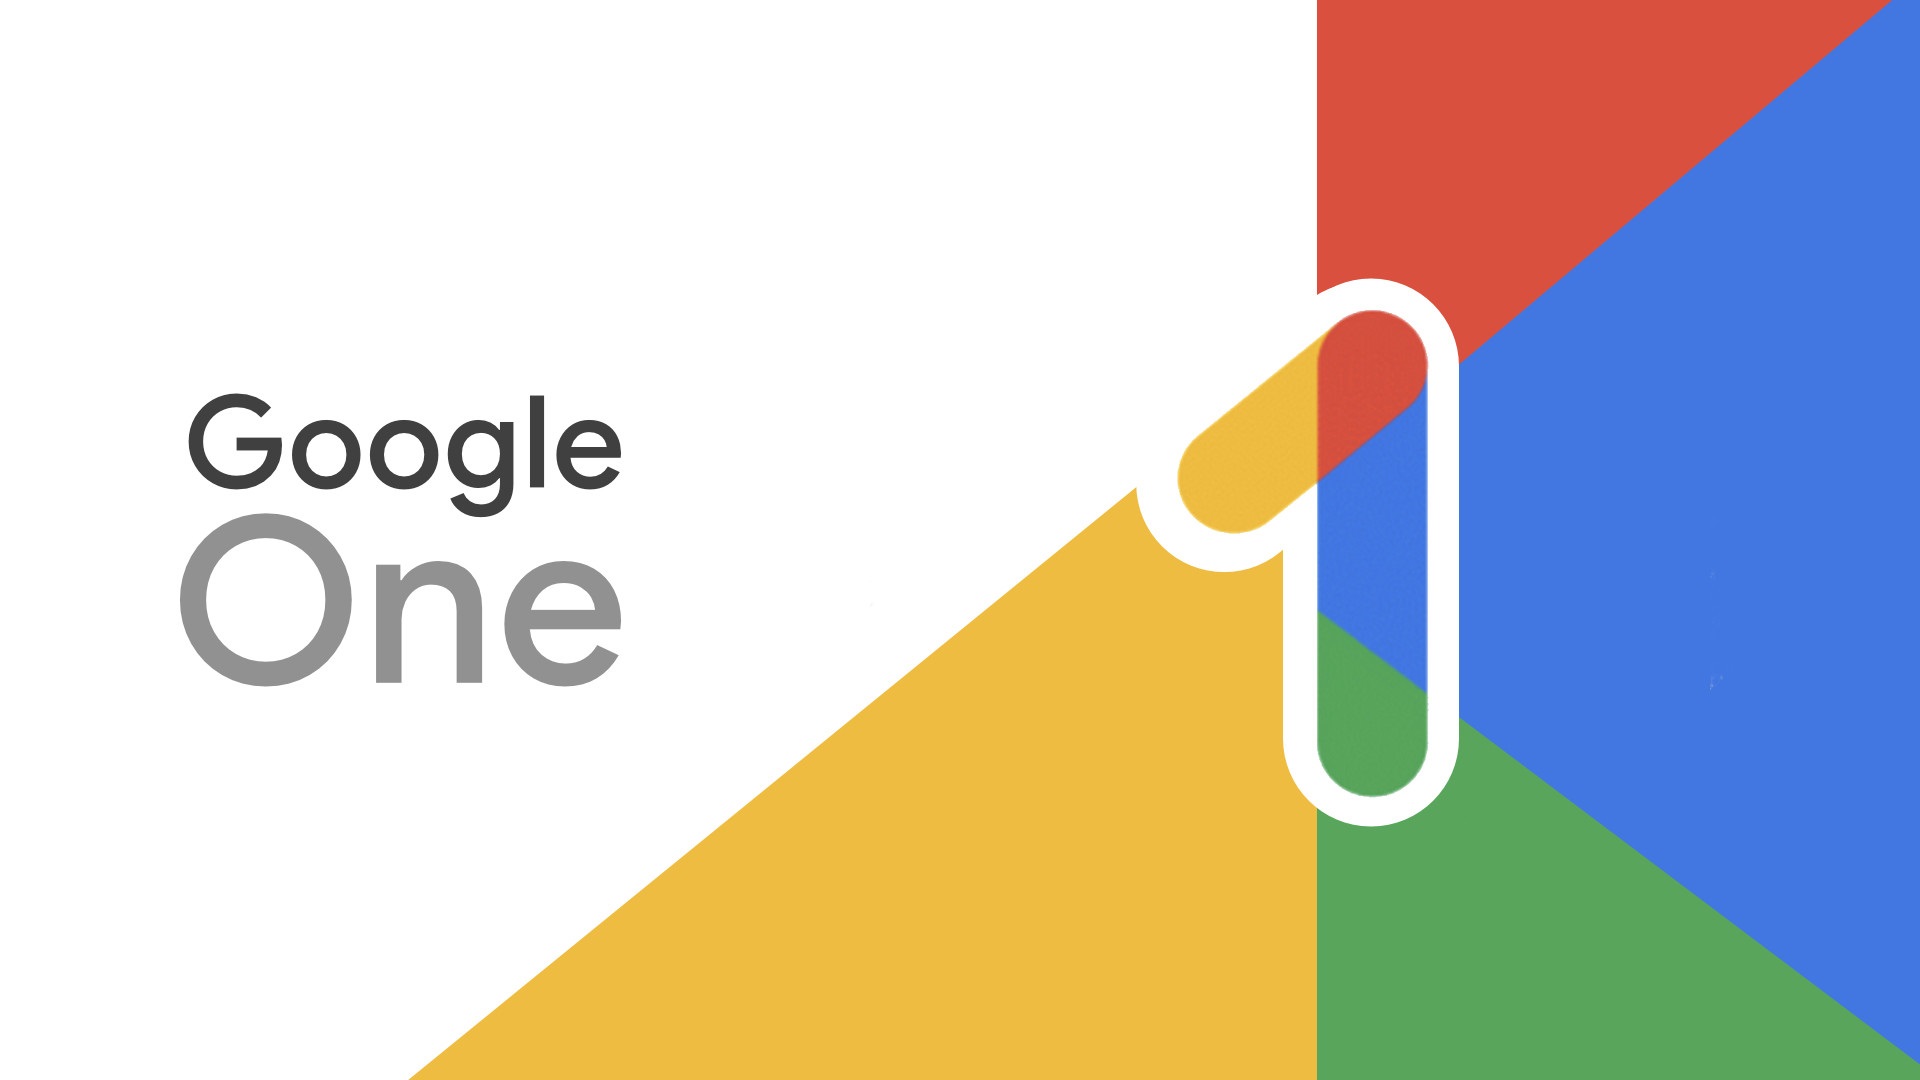 Google One VPN legges ned innen utgangen av året.